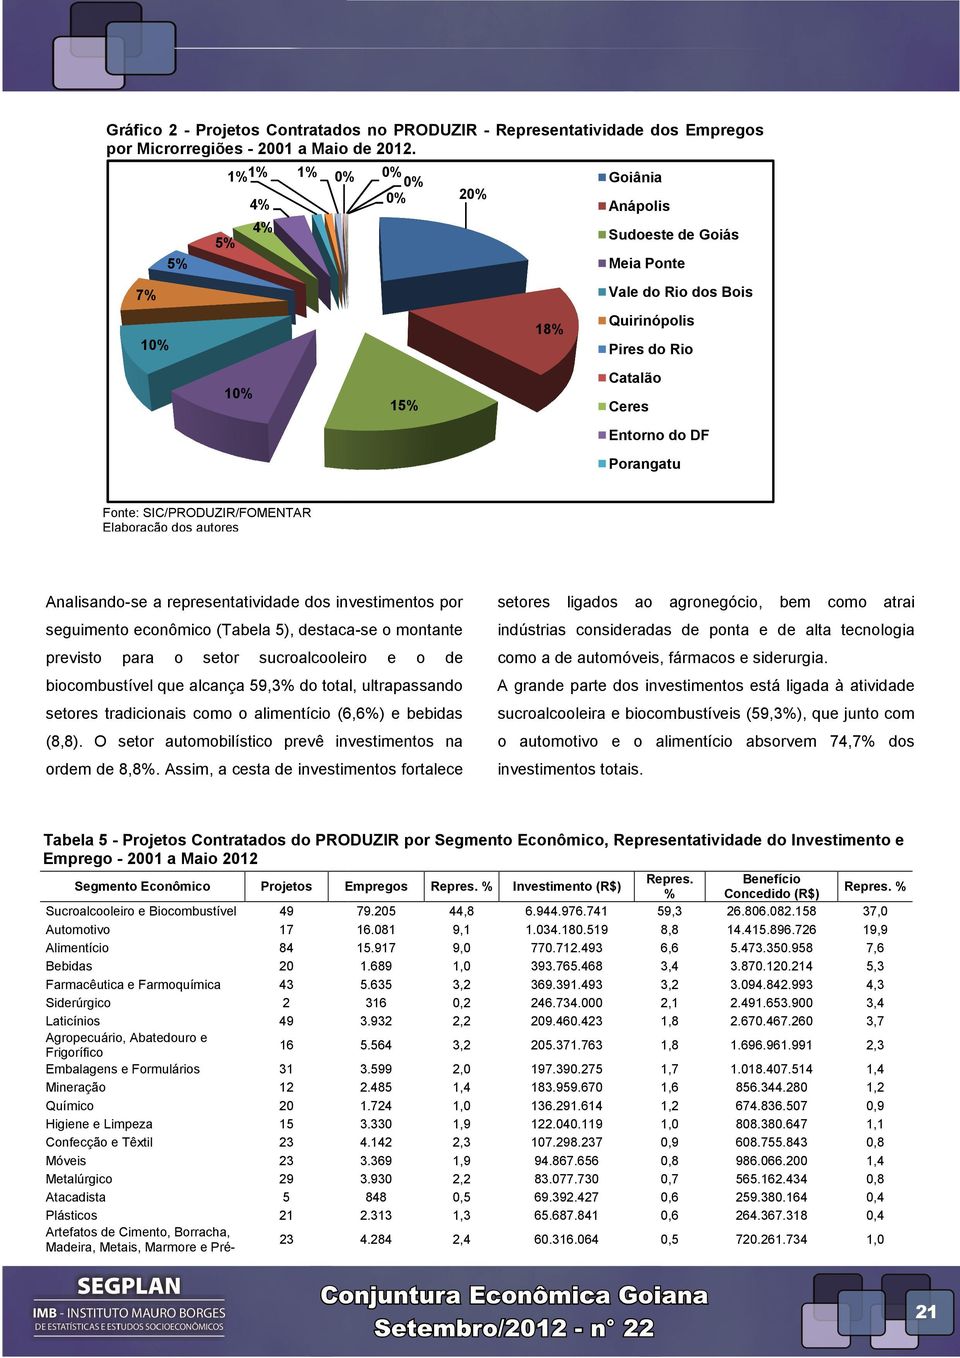 SIC/PRODUZIR/FOMENTAR Analisando-se se a representatividade dos investimentos por seguimento econômico (Tabela 5), destaca-se o montante previsto para o setor sucroalcooleiro e o de biocombustível